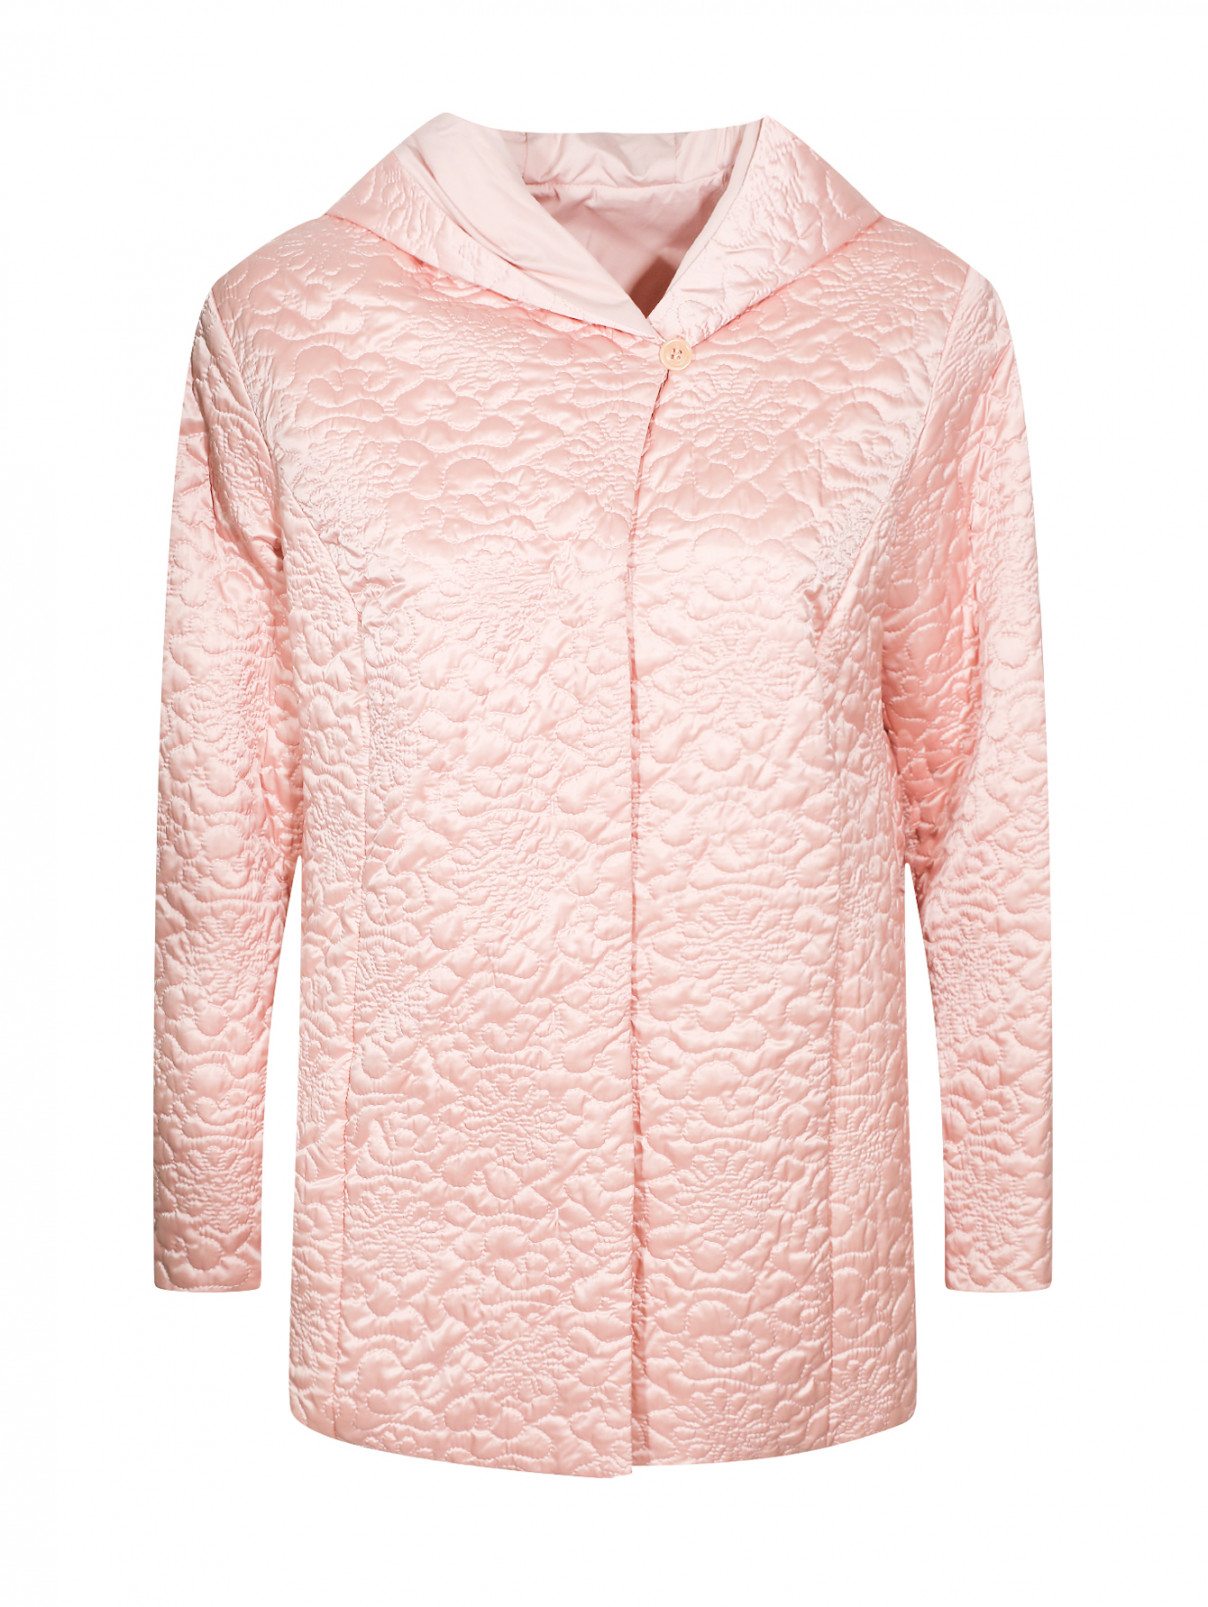 Стеганая куртка с капюшоном Voyage by Marina Rinaldi  –  Общий вид  – Цвет:  Розовый